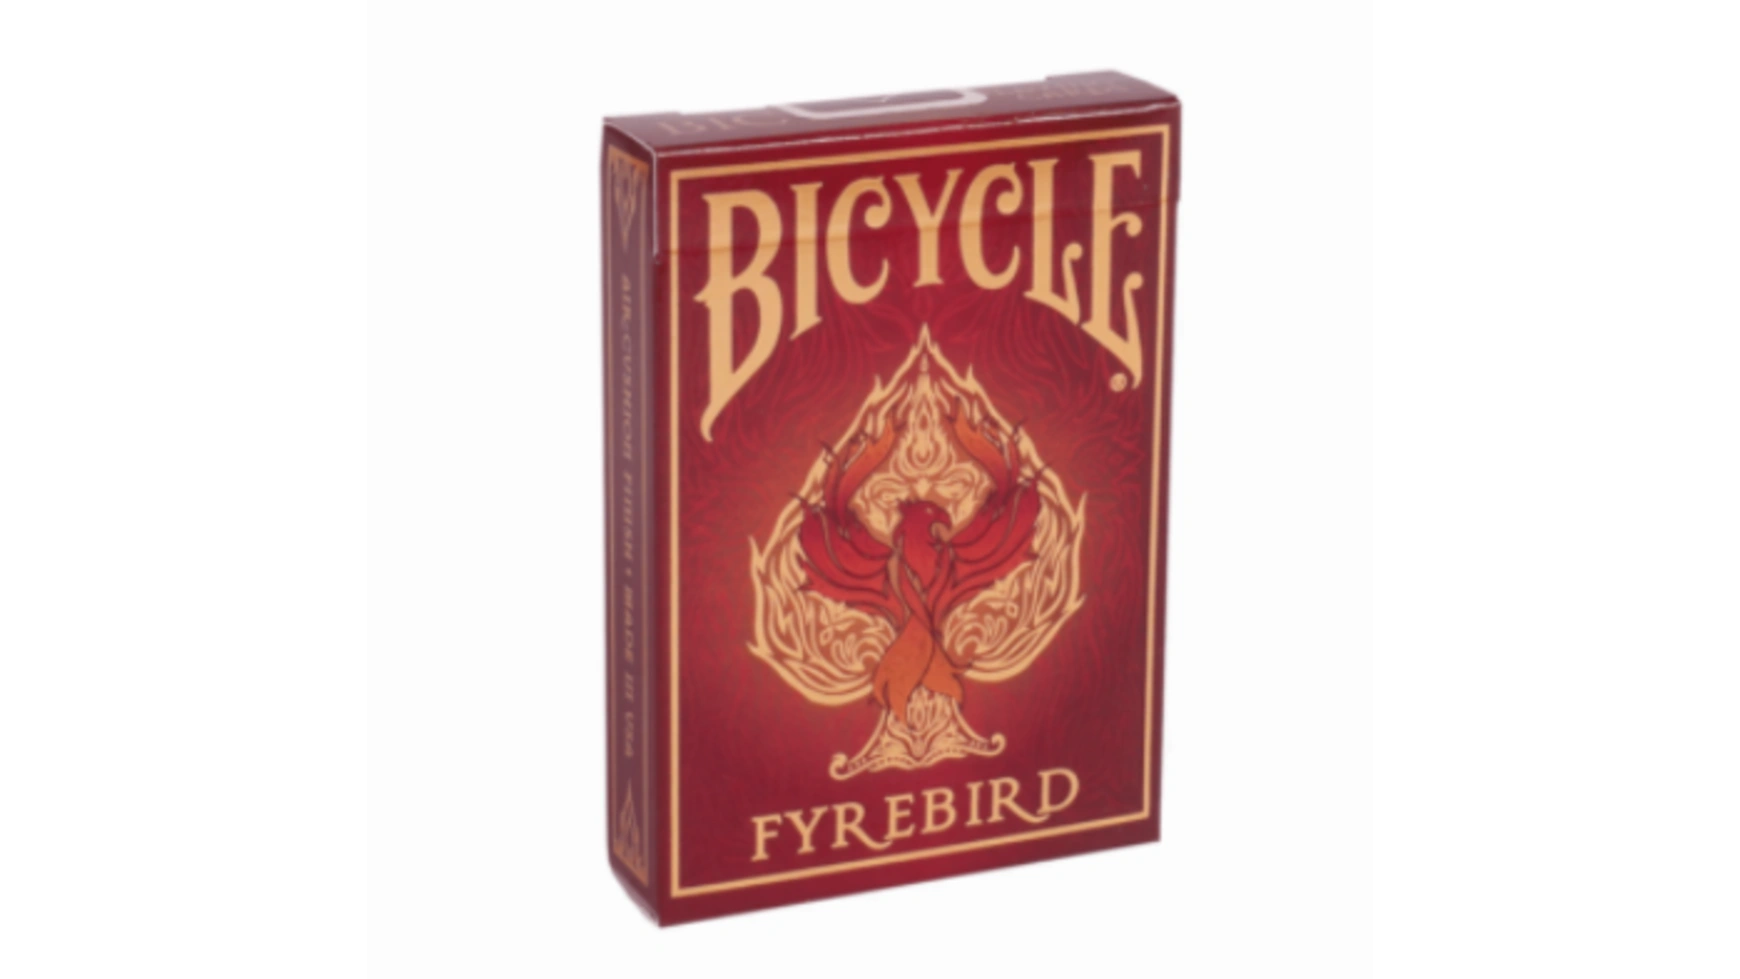 Bicycle игральные карты Fyrebird uspcc игральные карты bicycle pro poker peek uspcc сша 54 карты